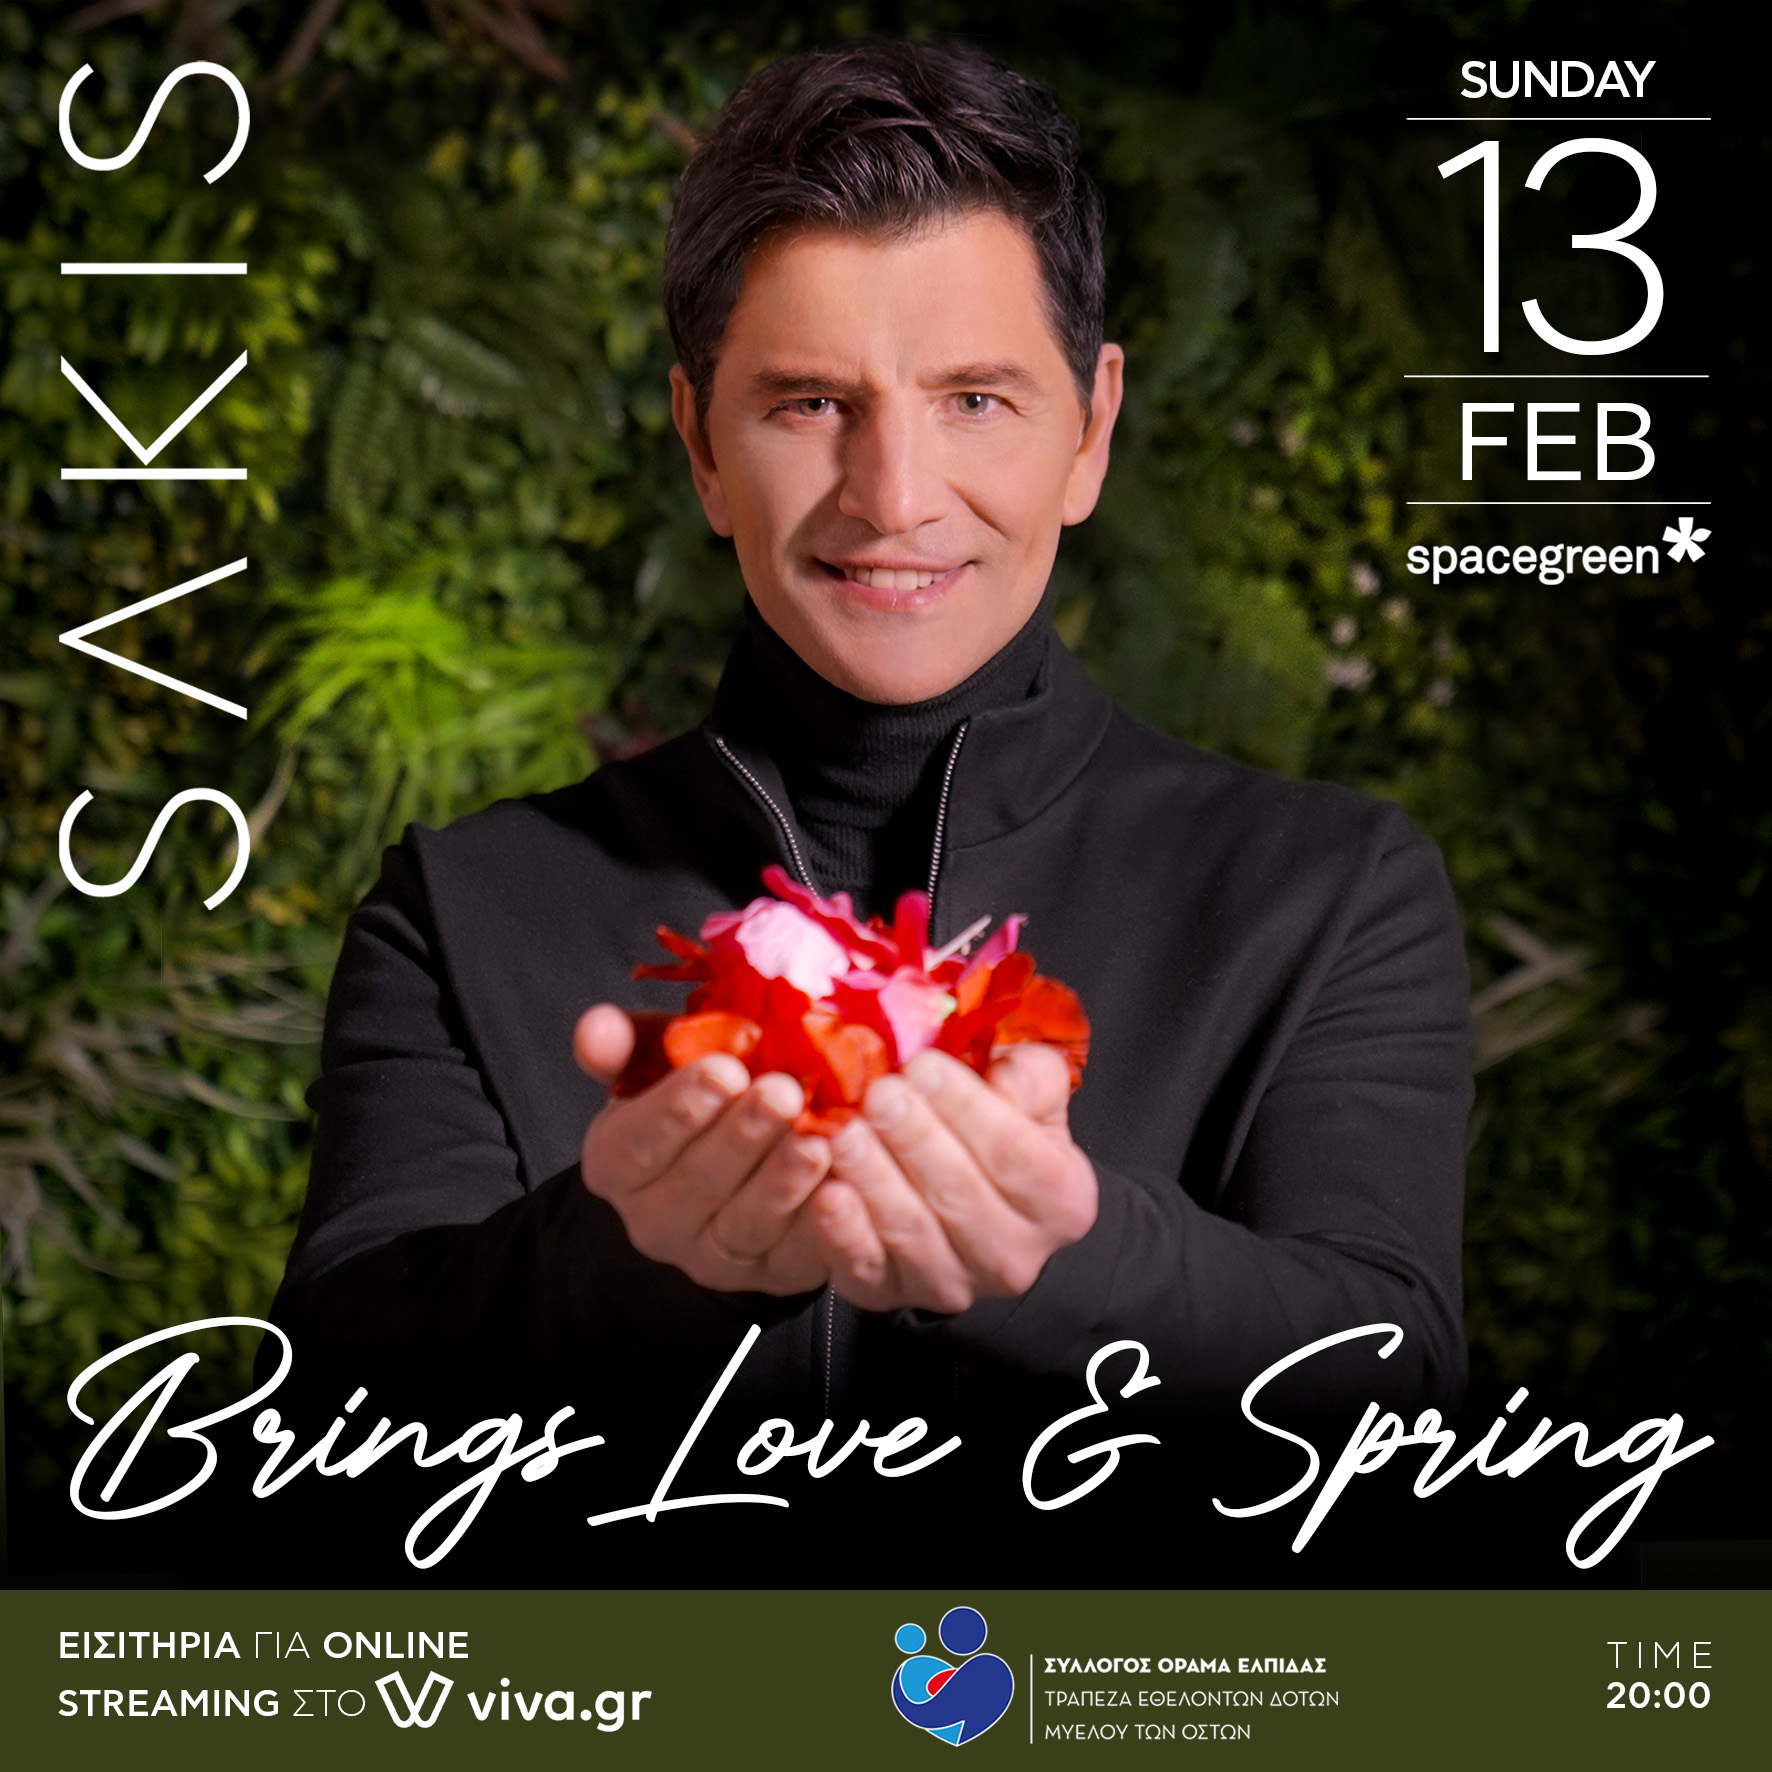 Sakis brings Love & Spring Concert